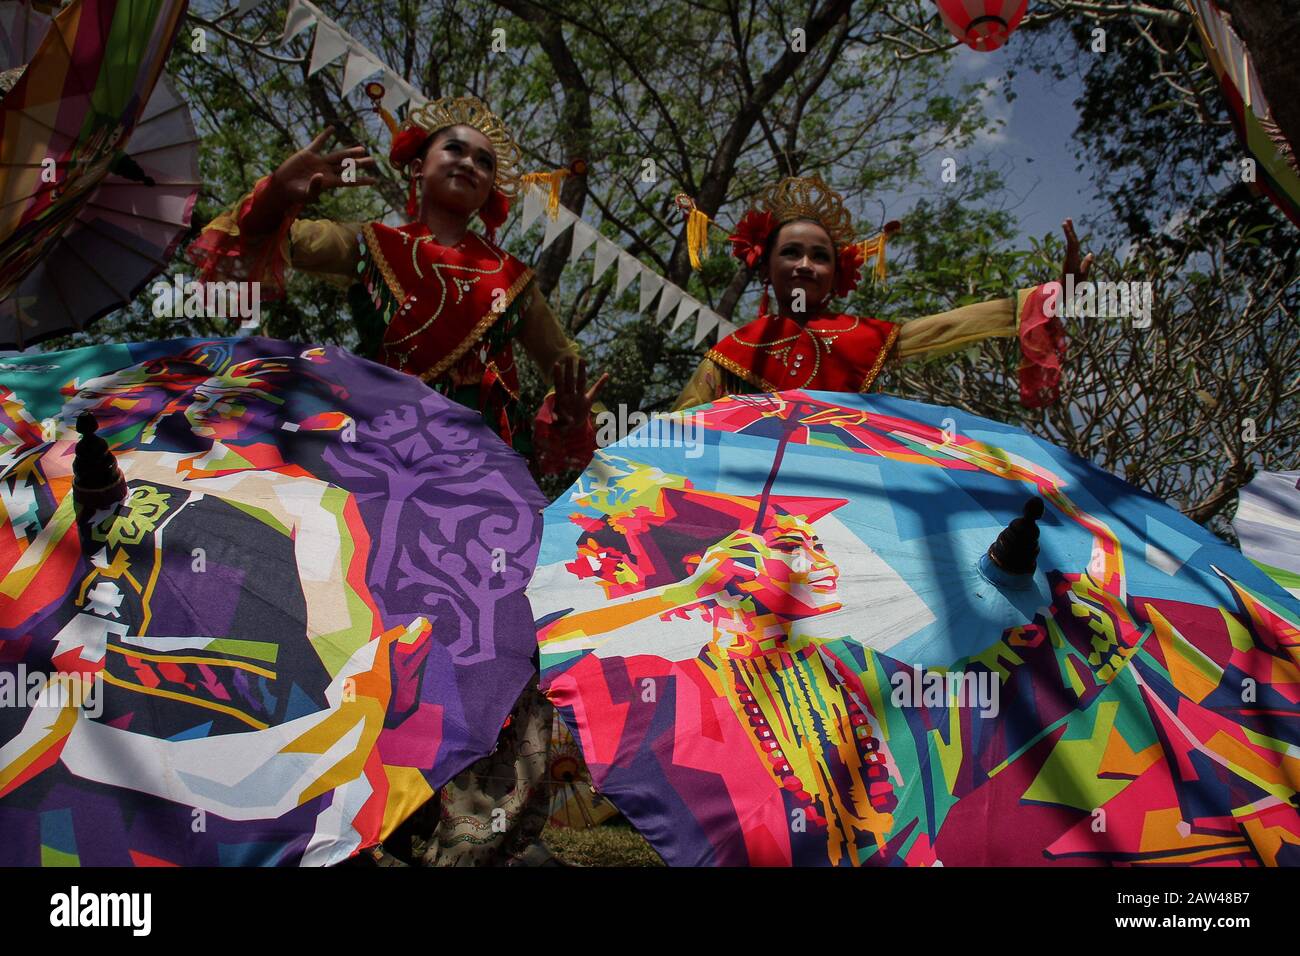 Tänzerinnen und Tänzer spielen den traditionellen Tanz während des Nusantara Umbrella Festivals im Prambanan-Tempel in Yogyakarta, Sonntag, 8. September 2019. Dieses jährliche Dachfestival bietet Tausende von Schirmkreationen aus ganz Indonesien. Der Prambanan-Tempel wurde ausgewählt, weil er historischen Wert enthält und von der UNESCO als Kulturerbe Indonesiens anerkannt wurde. Stockfoto